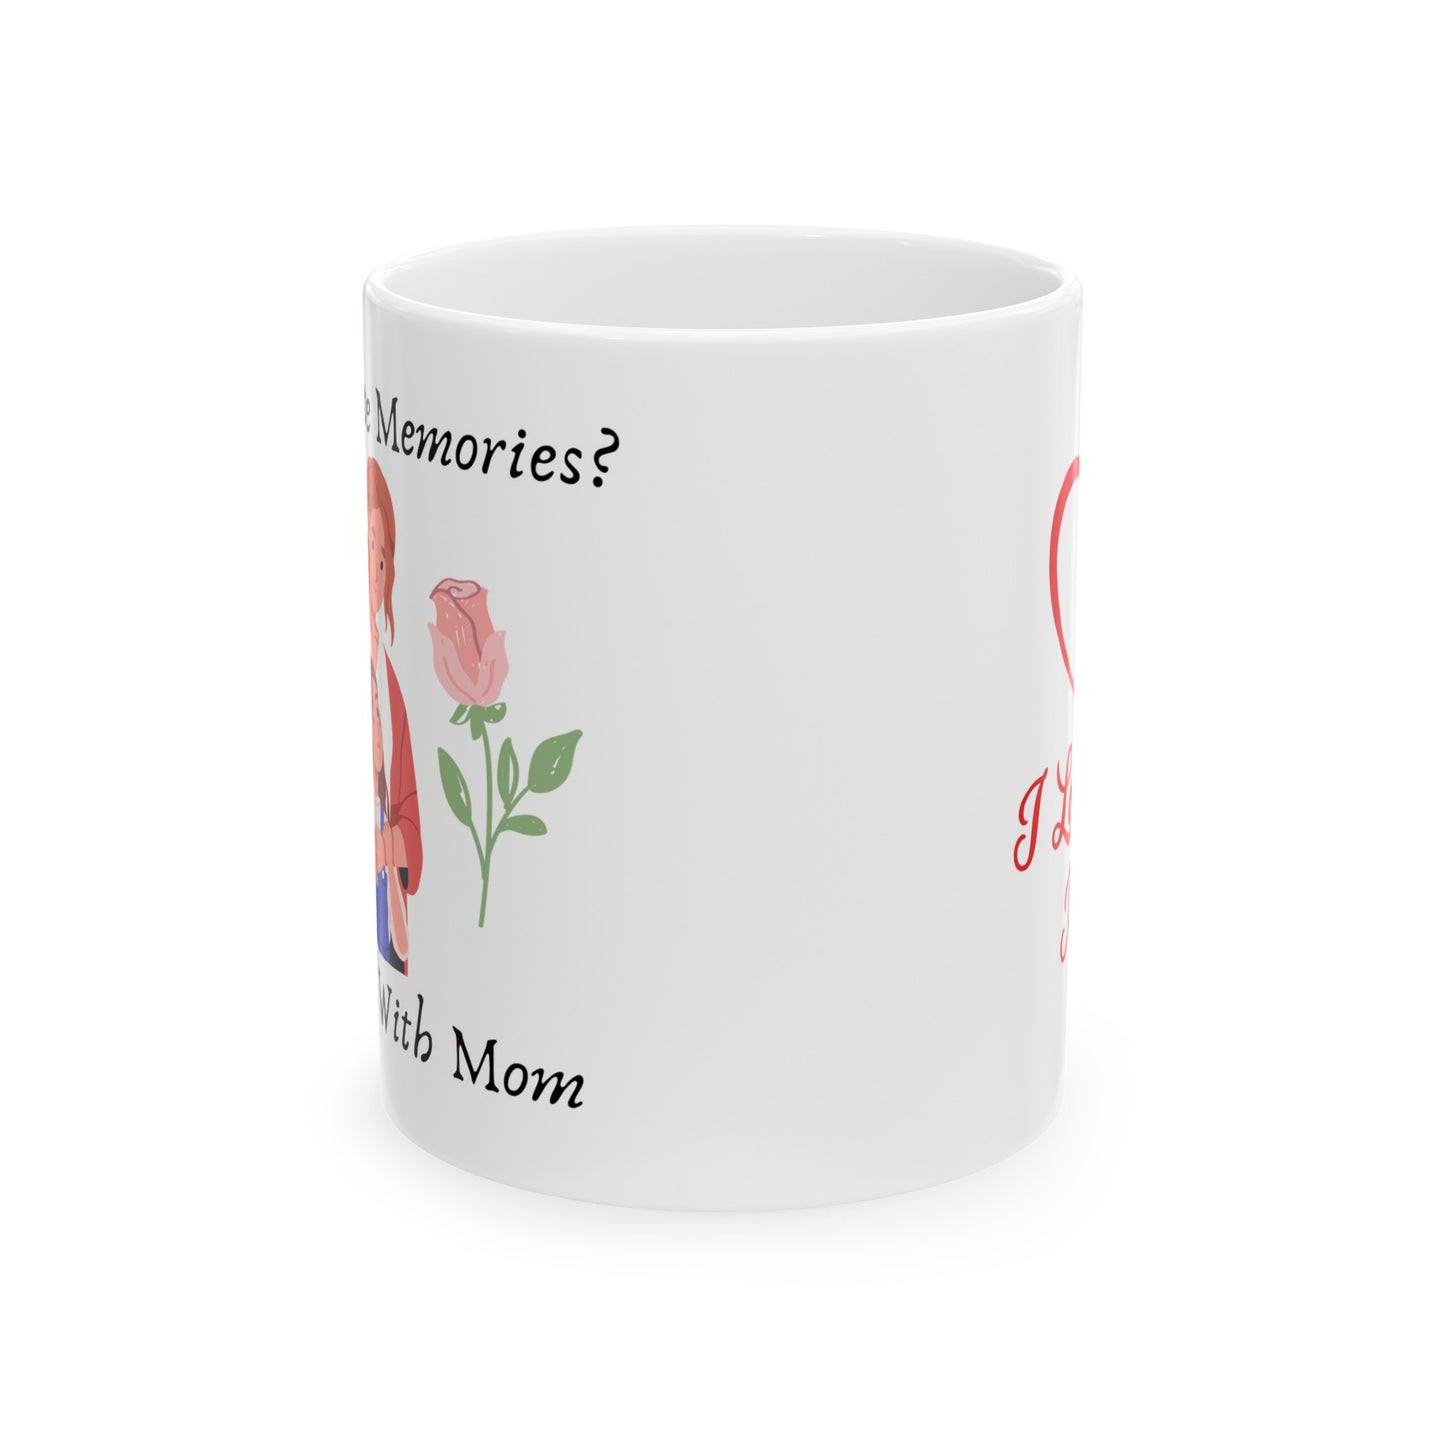 My Favorite Memories Mug- Mom/Daughter